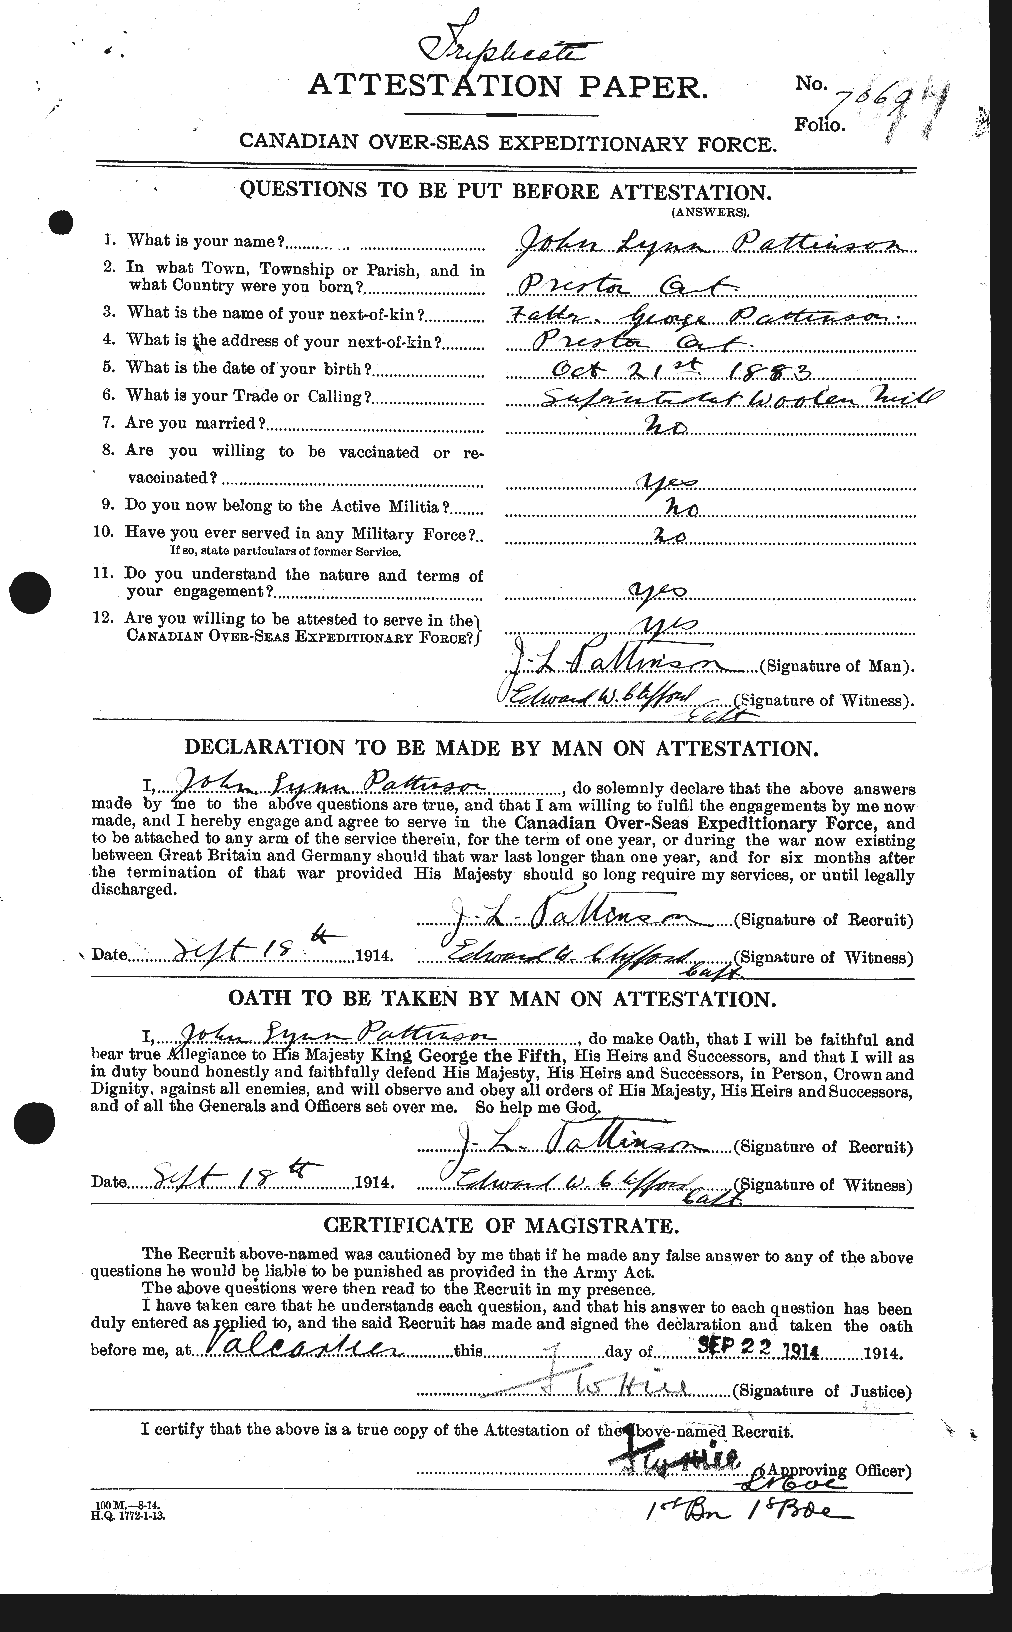 Dossiers du Personnel de la Première Guerre mondiale - CEC 568906a